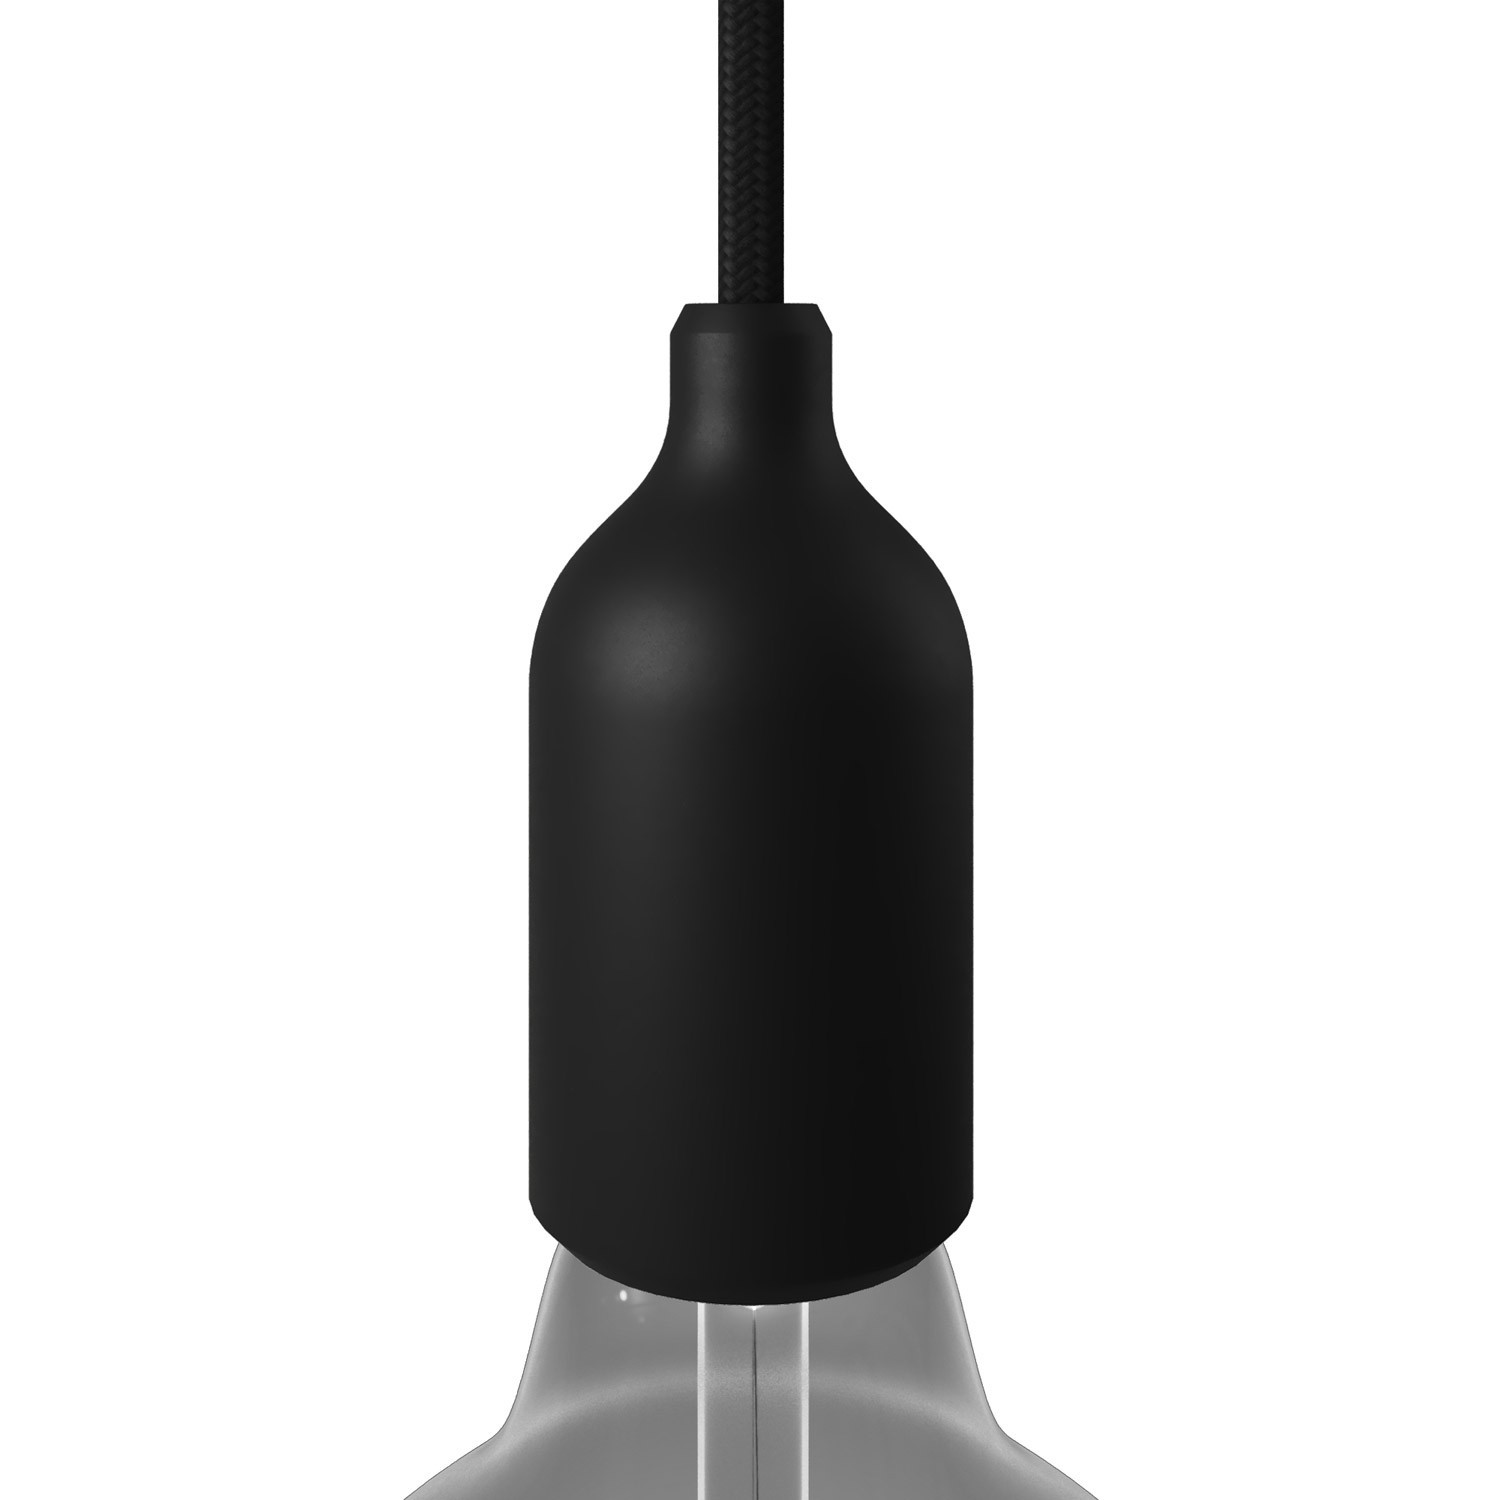 Silicone E27 lamphouder kit met verborgen kabelklem